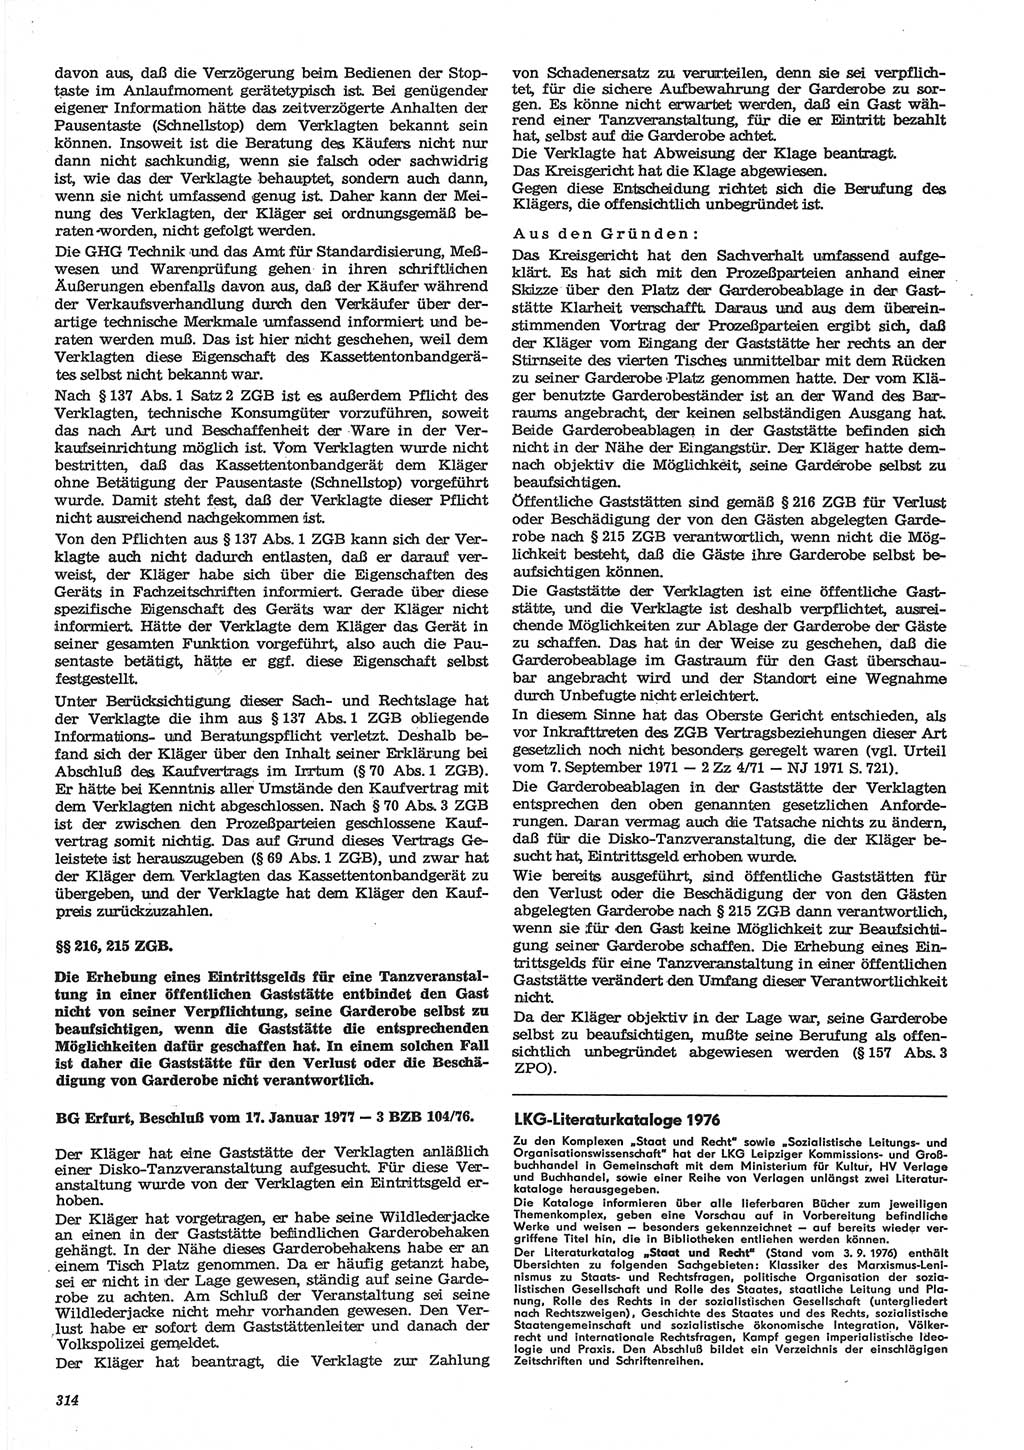 Neue Justiz (NJ), Zeitschrift für Recht und Rechtswissenschaft-Zeitschrift, sozialistisches Recht und Gesetzlichkeit, 31. Jahrgang 1977, Seite 314 (NJ DDR 1977, S. 314)